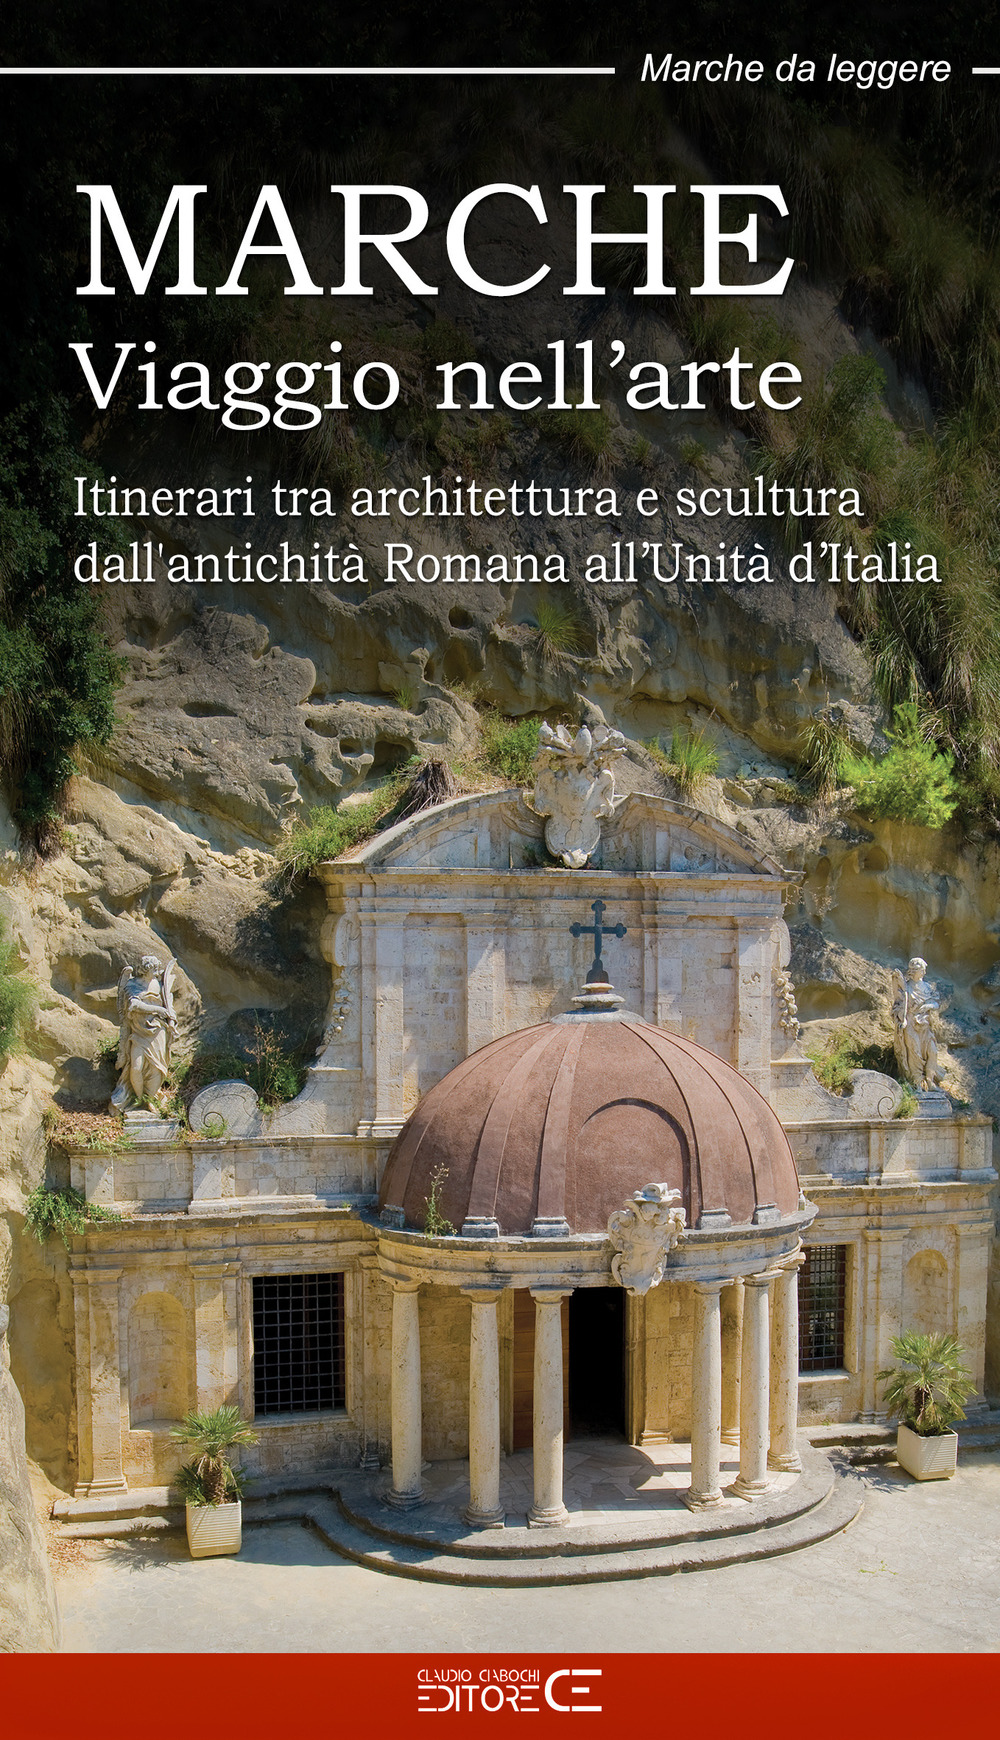 Marche. Viaggio nell'arte. Itinerari tra architettura e scultura dall'antichità Romana all'Unità d'Italia